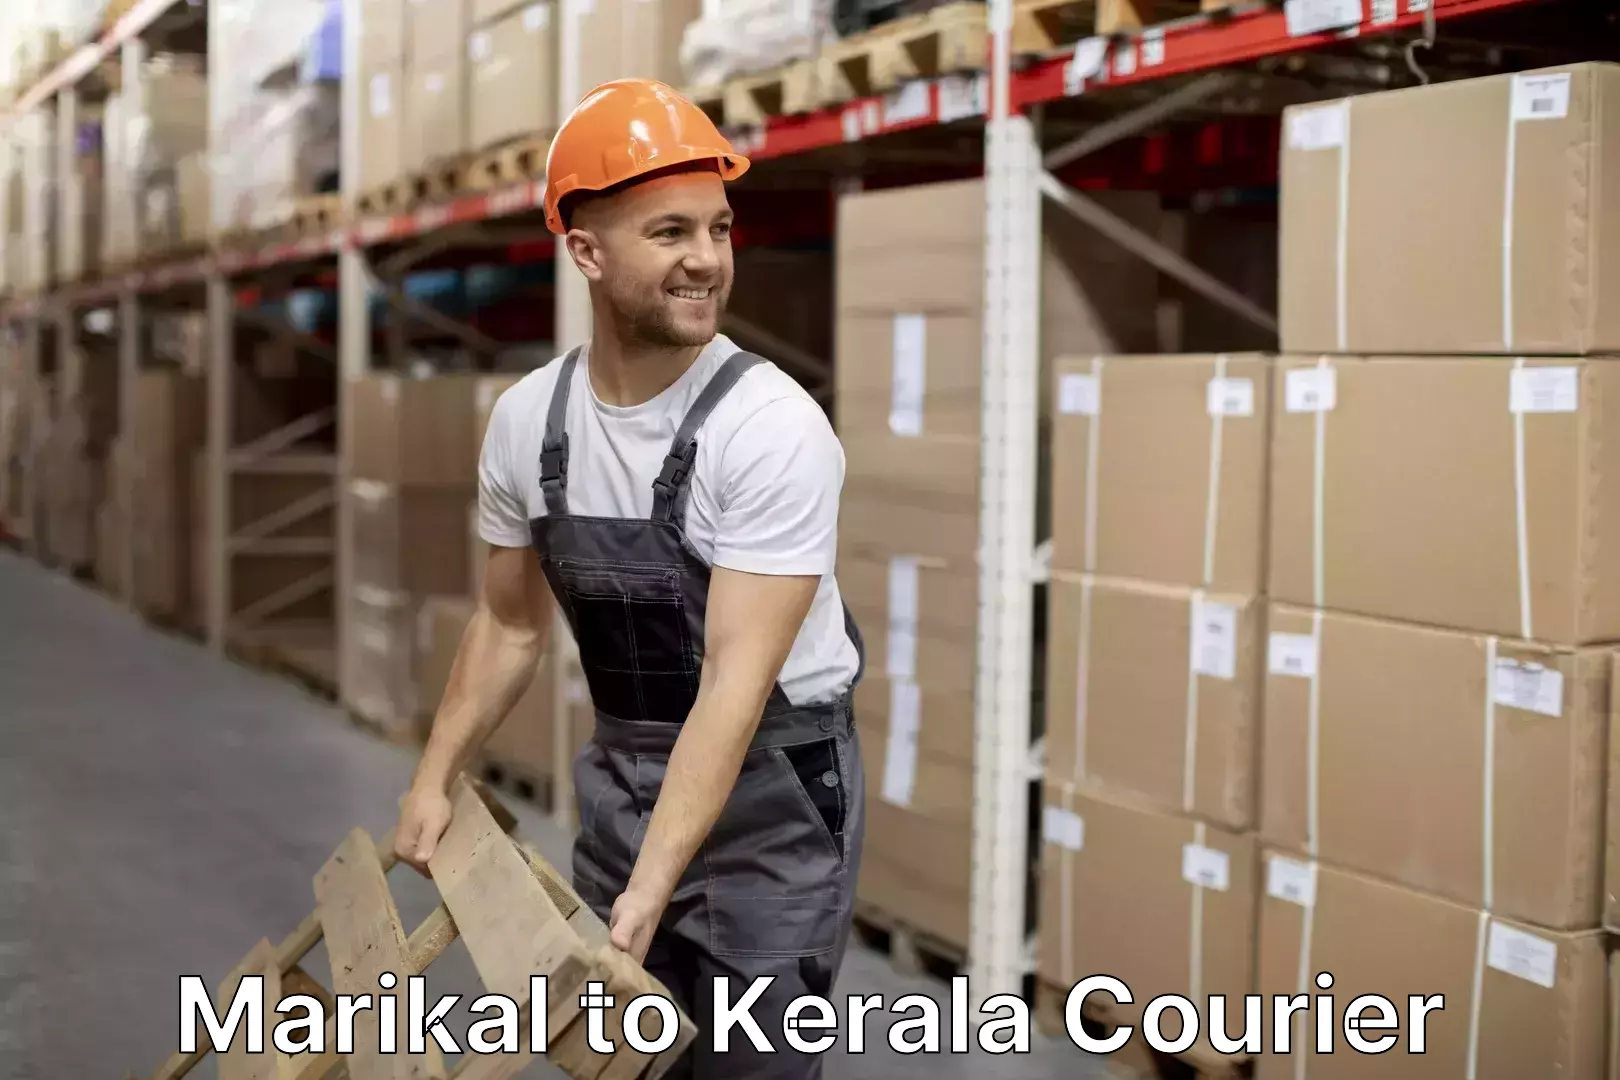 Professional moving company Marikal to Kerala